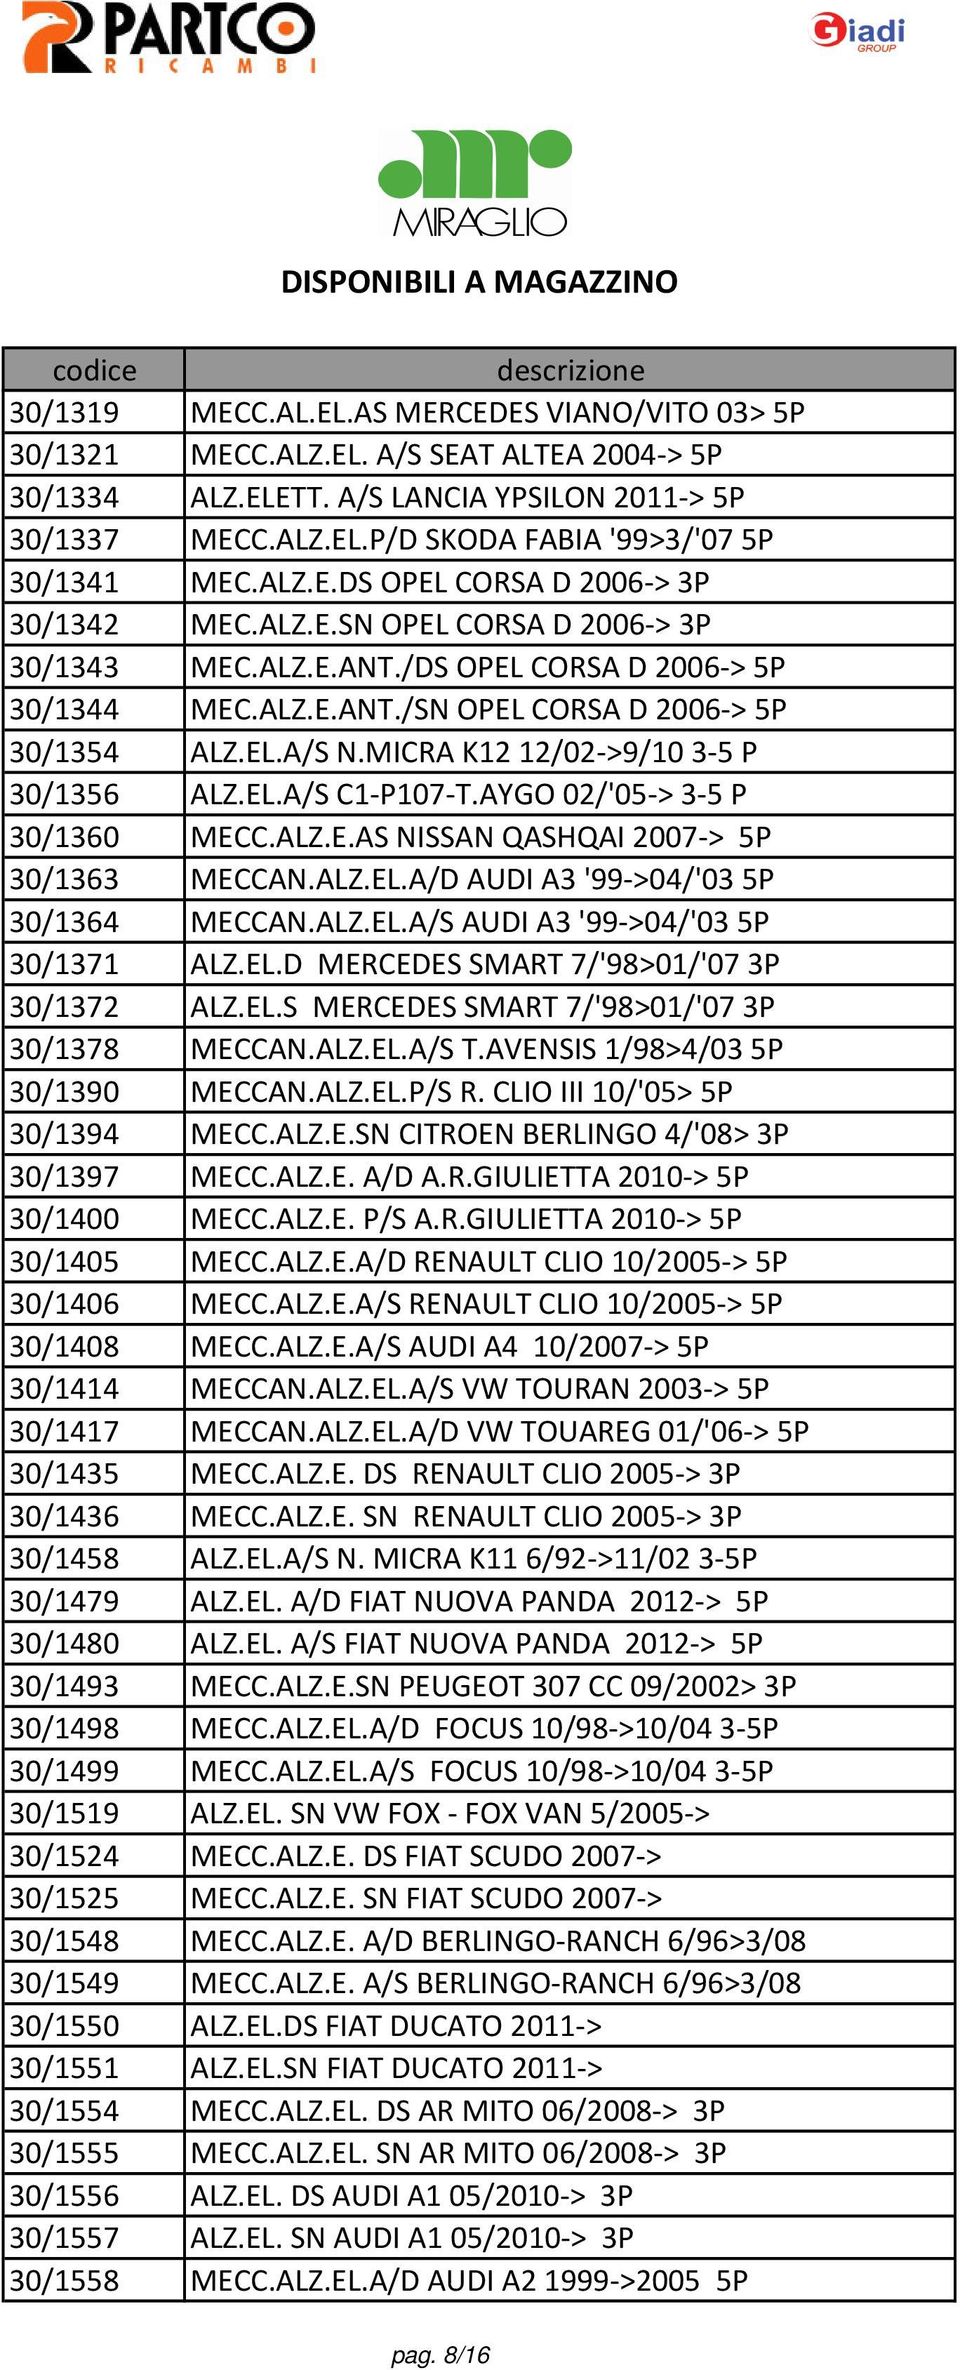 MICRA K12 12/02->9/103-5 P 30/1356 ALZ.EL.A/S C1-P107-T.AYGO 02/'05-> 3-5 P 30/1360 MECC.ALZ.E.AS NISSAN QASHQAI 2007-> 5P 30/1363 MECCAN.ALZ.EL.A/D AUDI A3 '99->04/'035P 30/1364 MECCAN.ALZ.EL.A/S AUDI A3 '99->04/'035P 30/1371 ALZ.